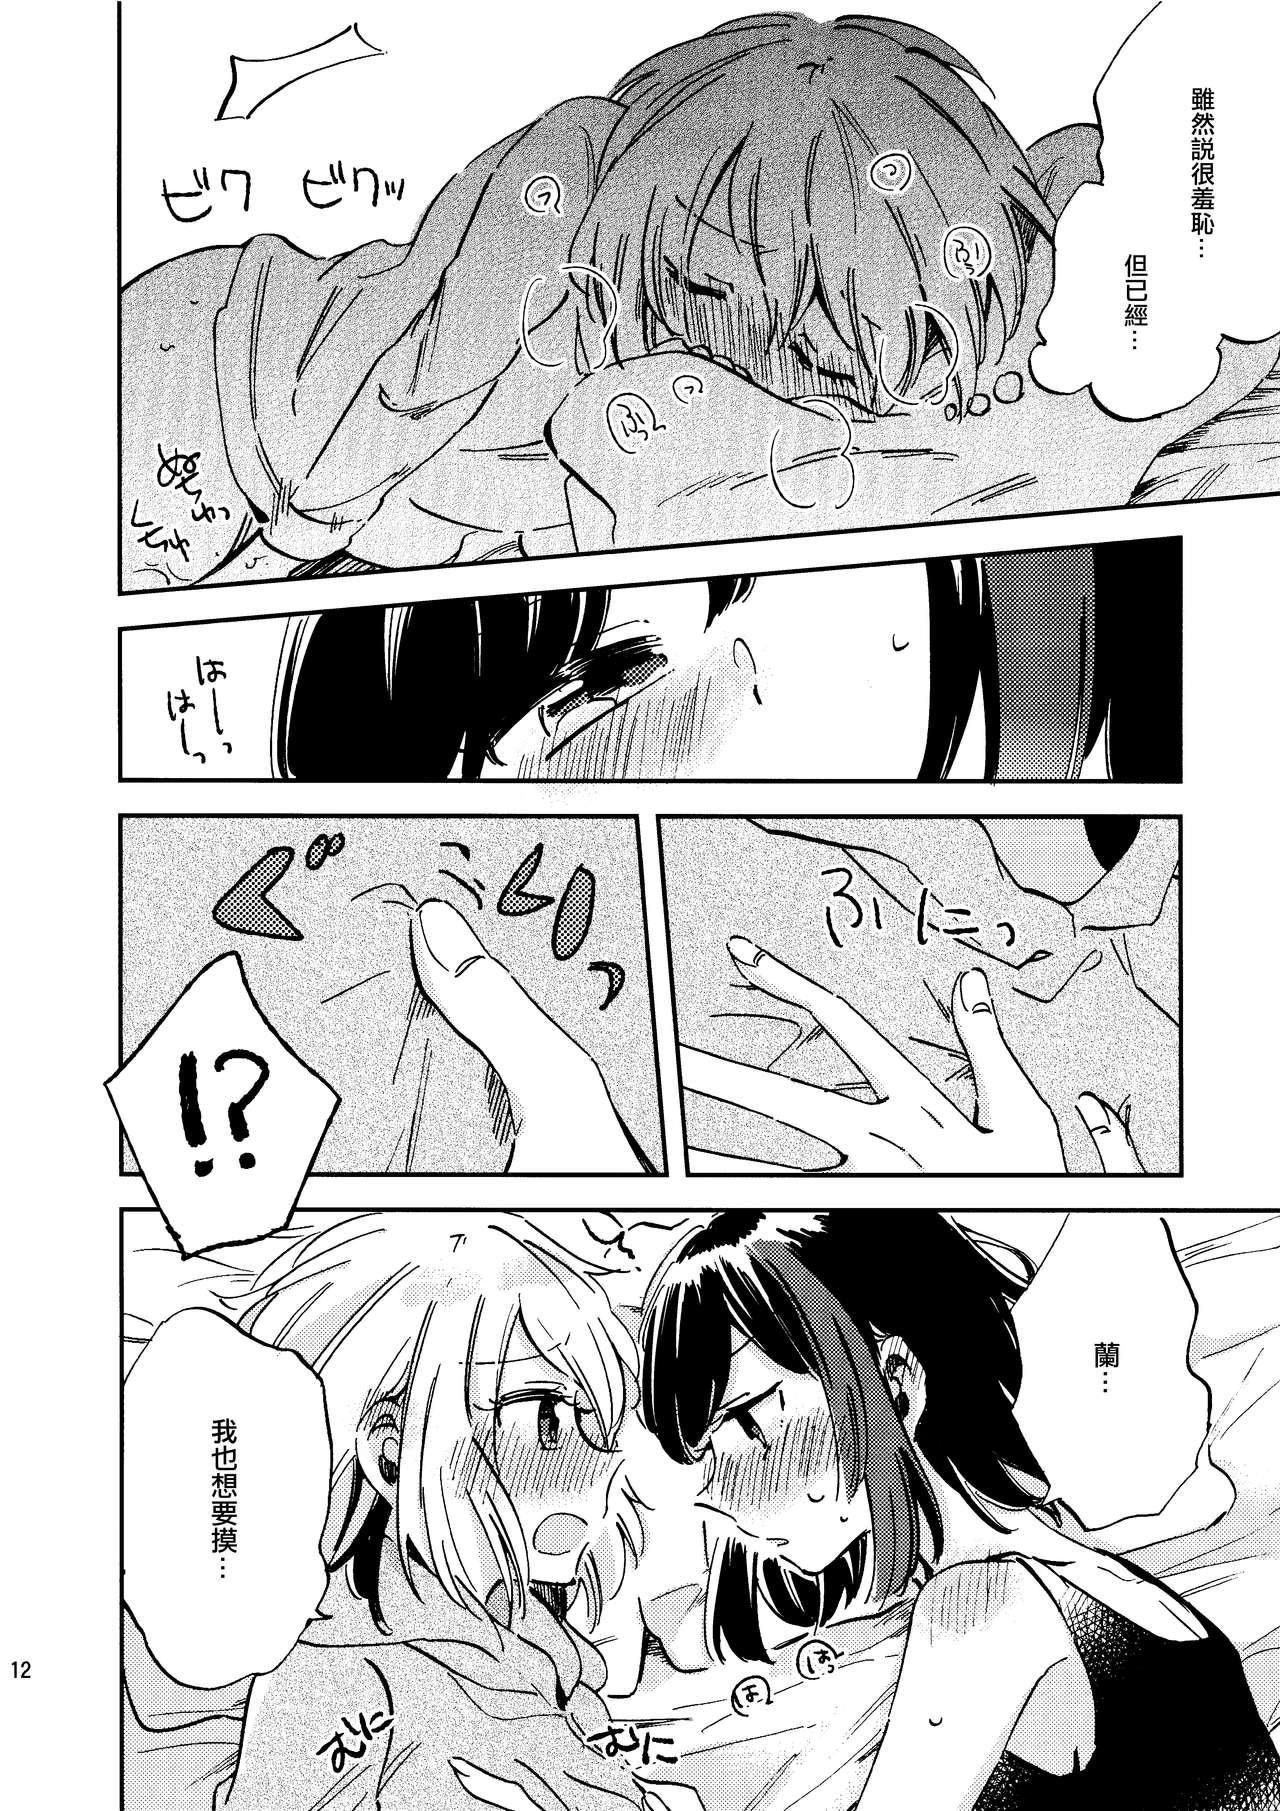 Pussy To Mouth Futari de Iru kara Dekiru Koto | 兩個人才做得到的事情 - Bang dream Shemale Porn - Page 12